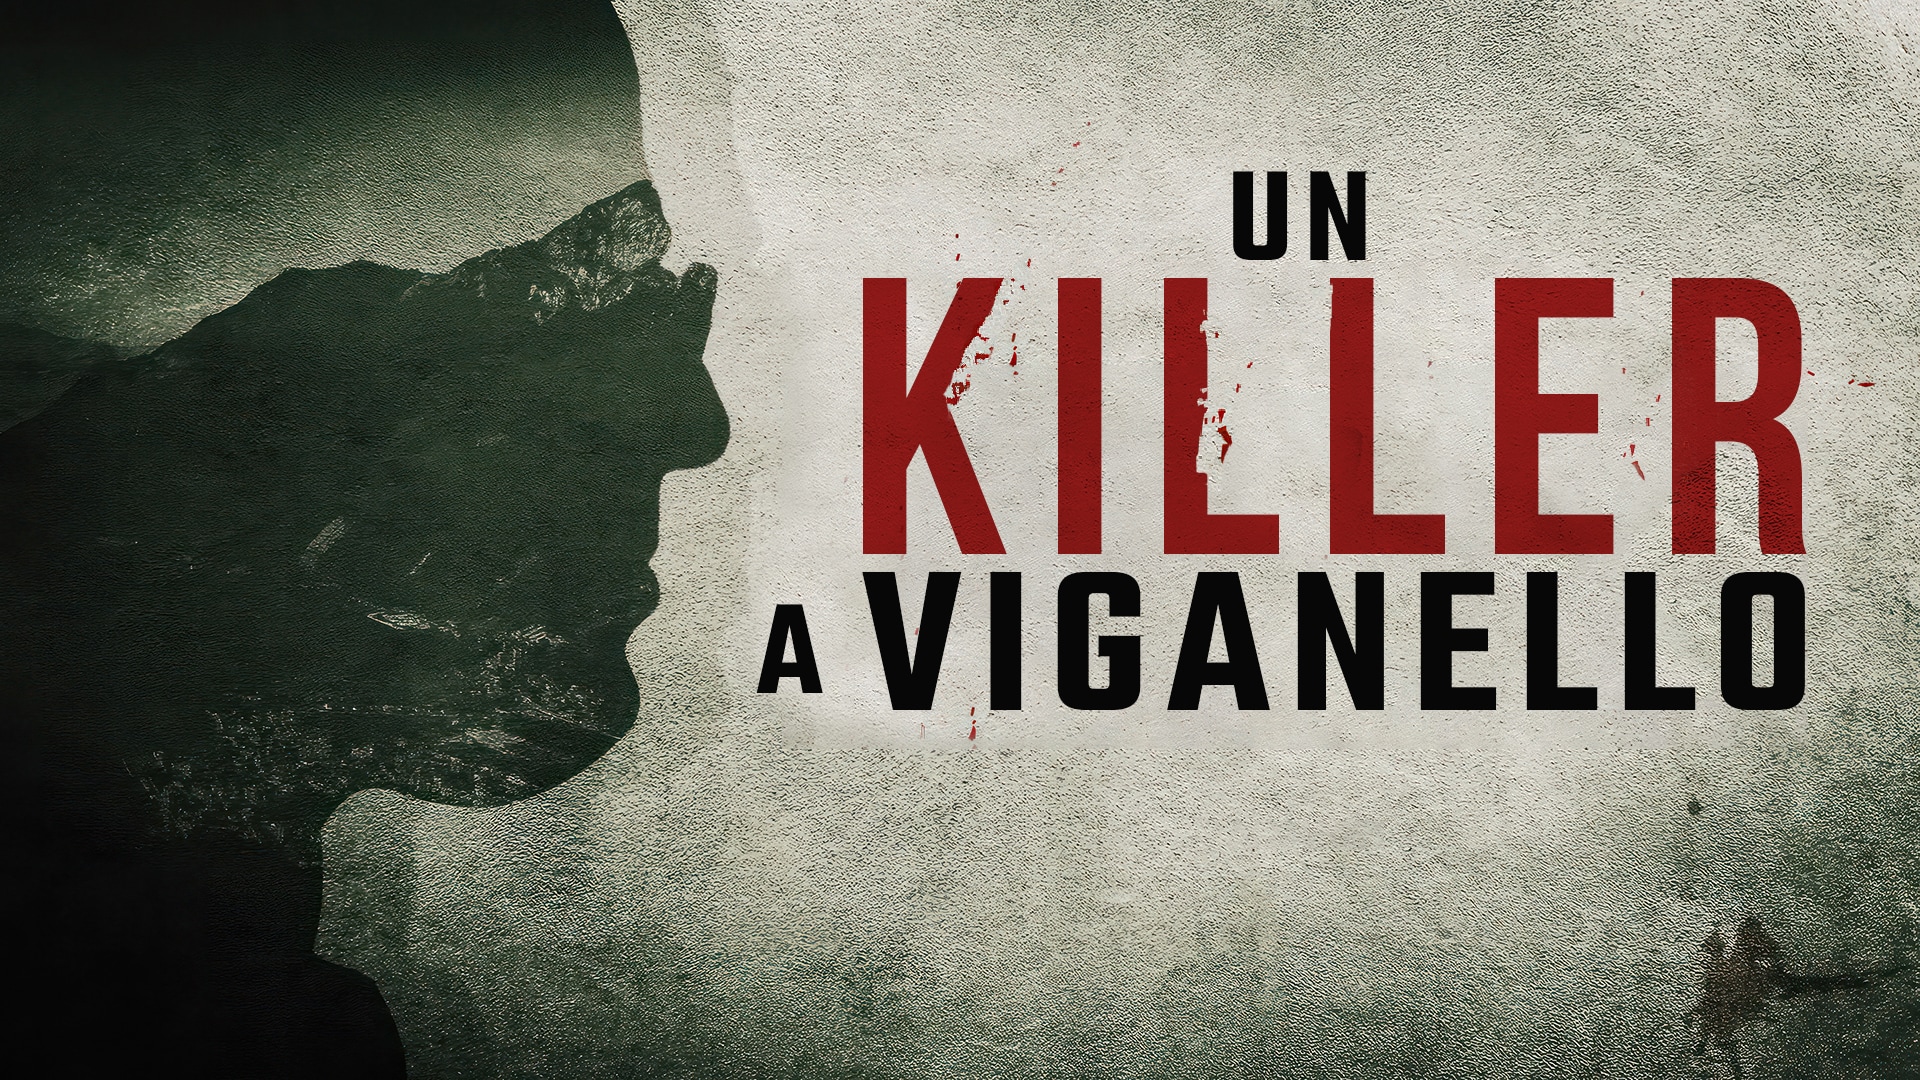 Un killer a Viganello